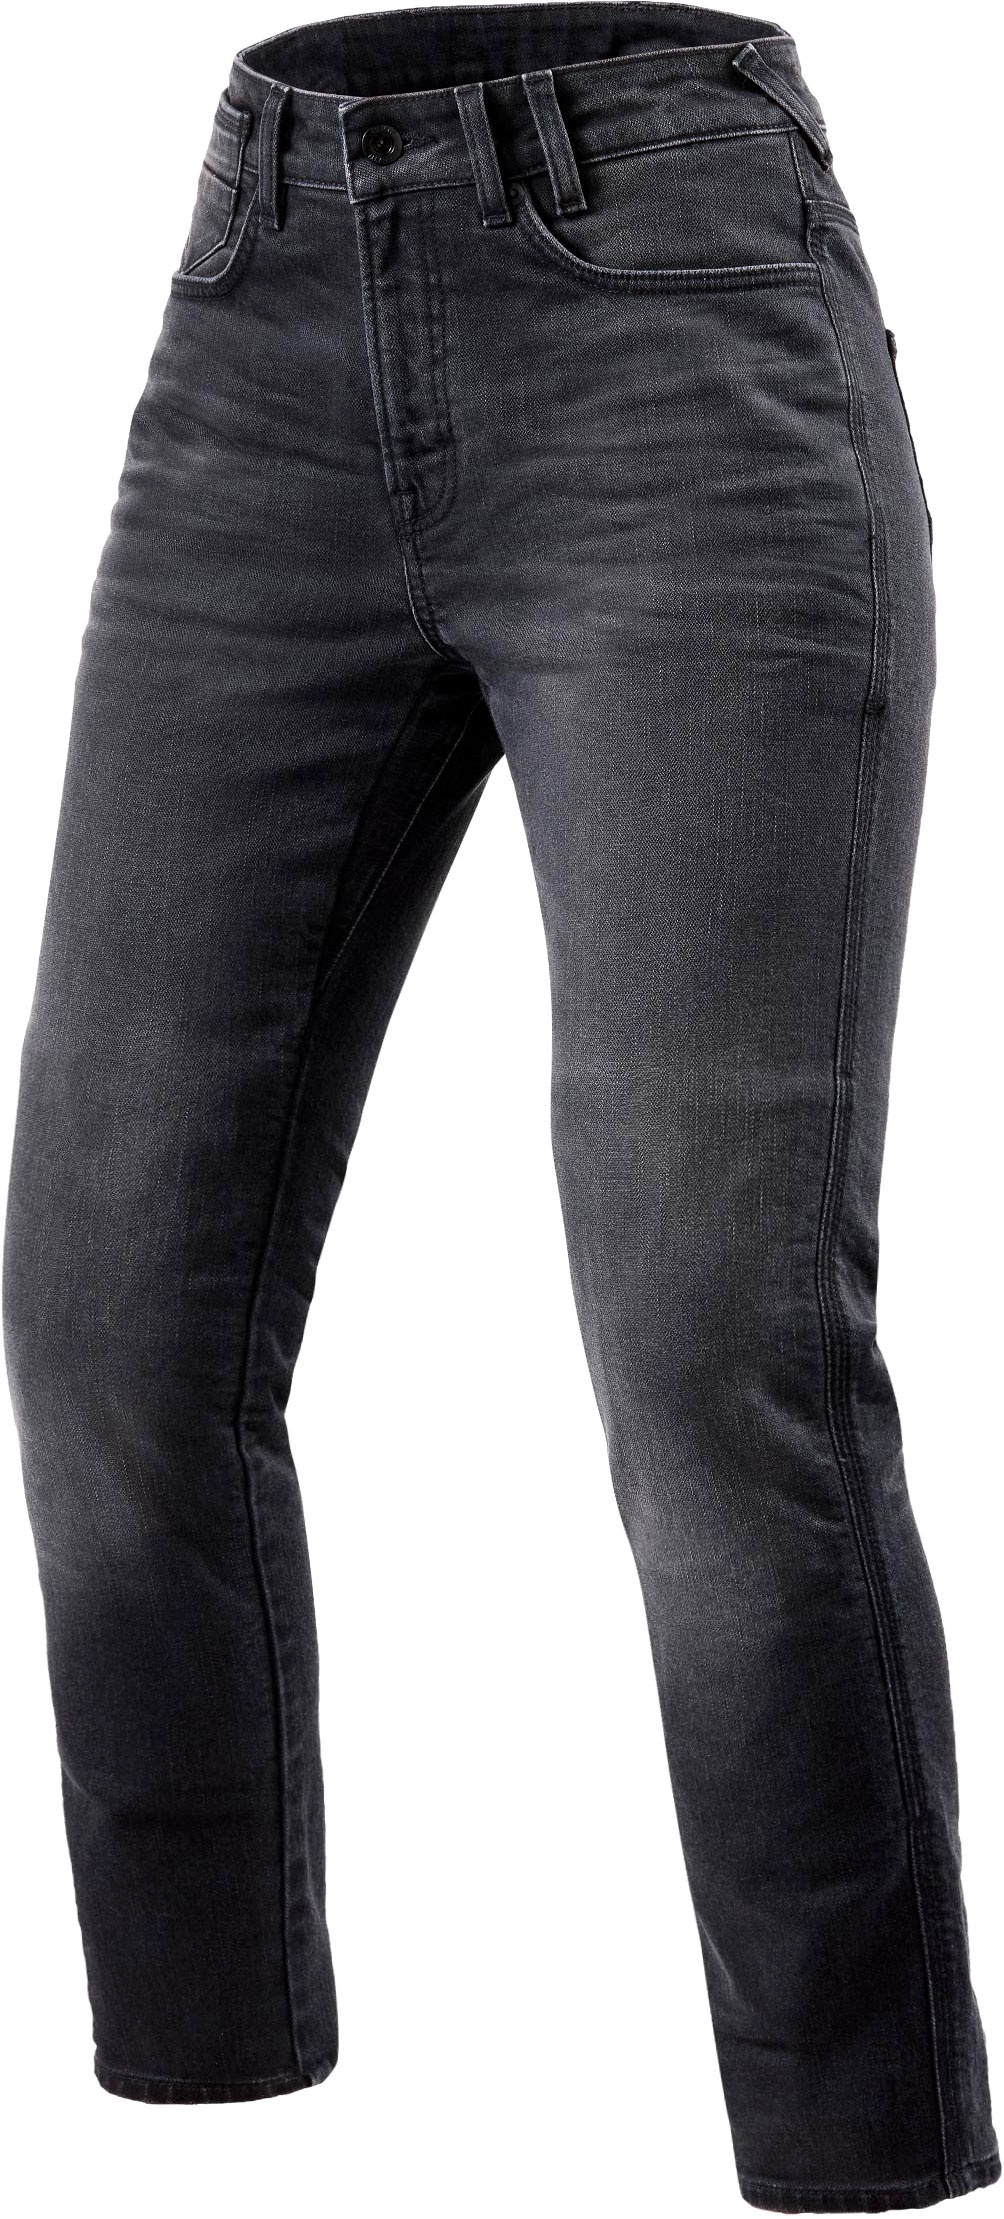 Revit Victoria 2, jeans femmes - Gris - W28/L30